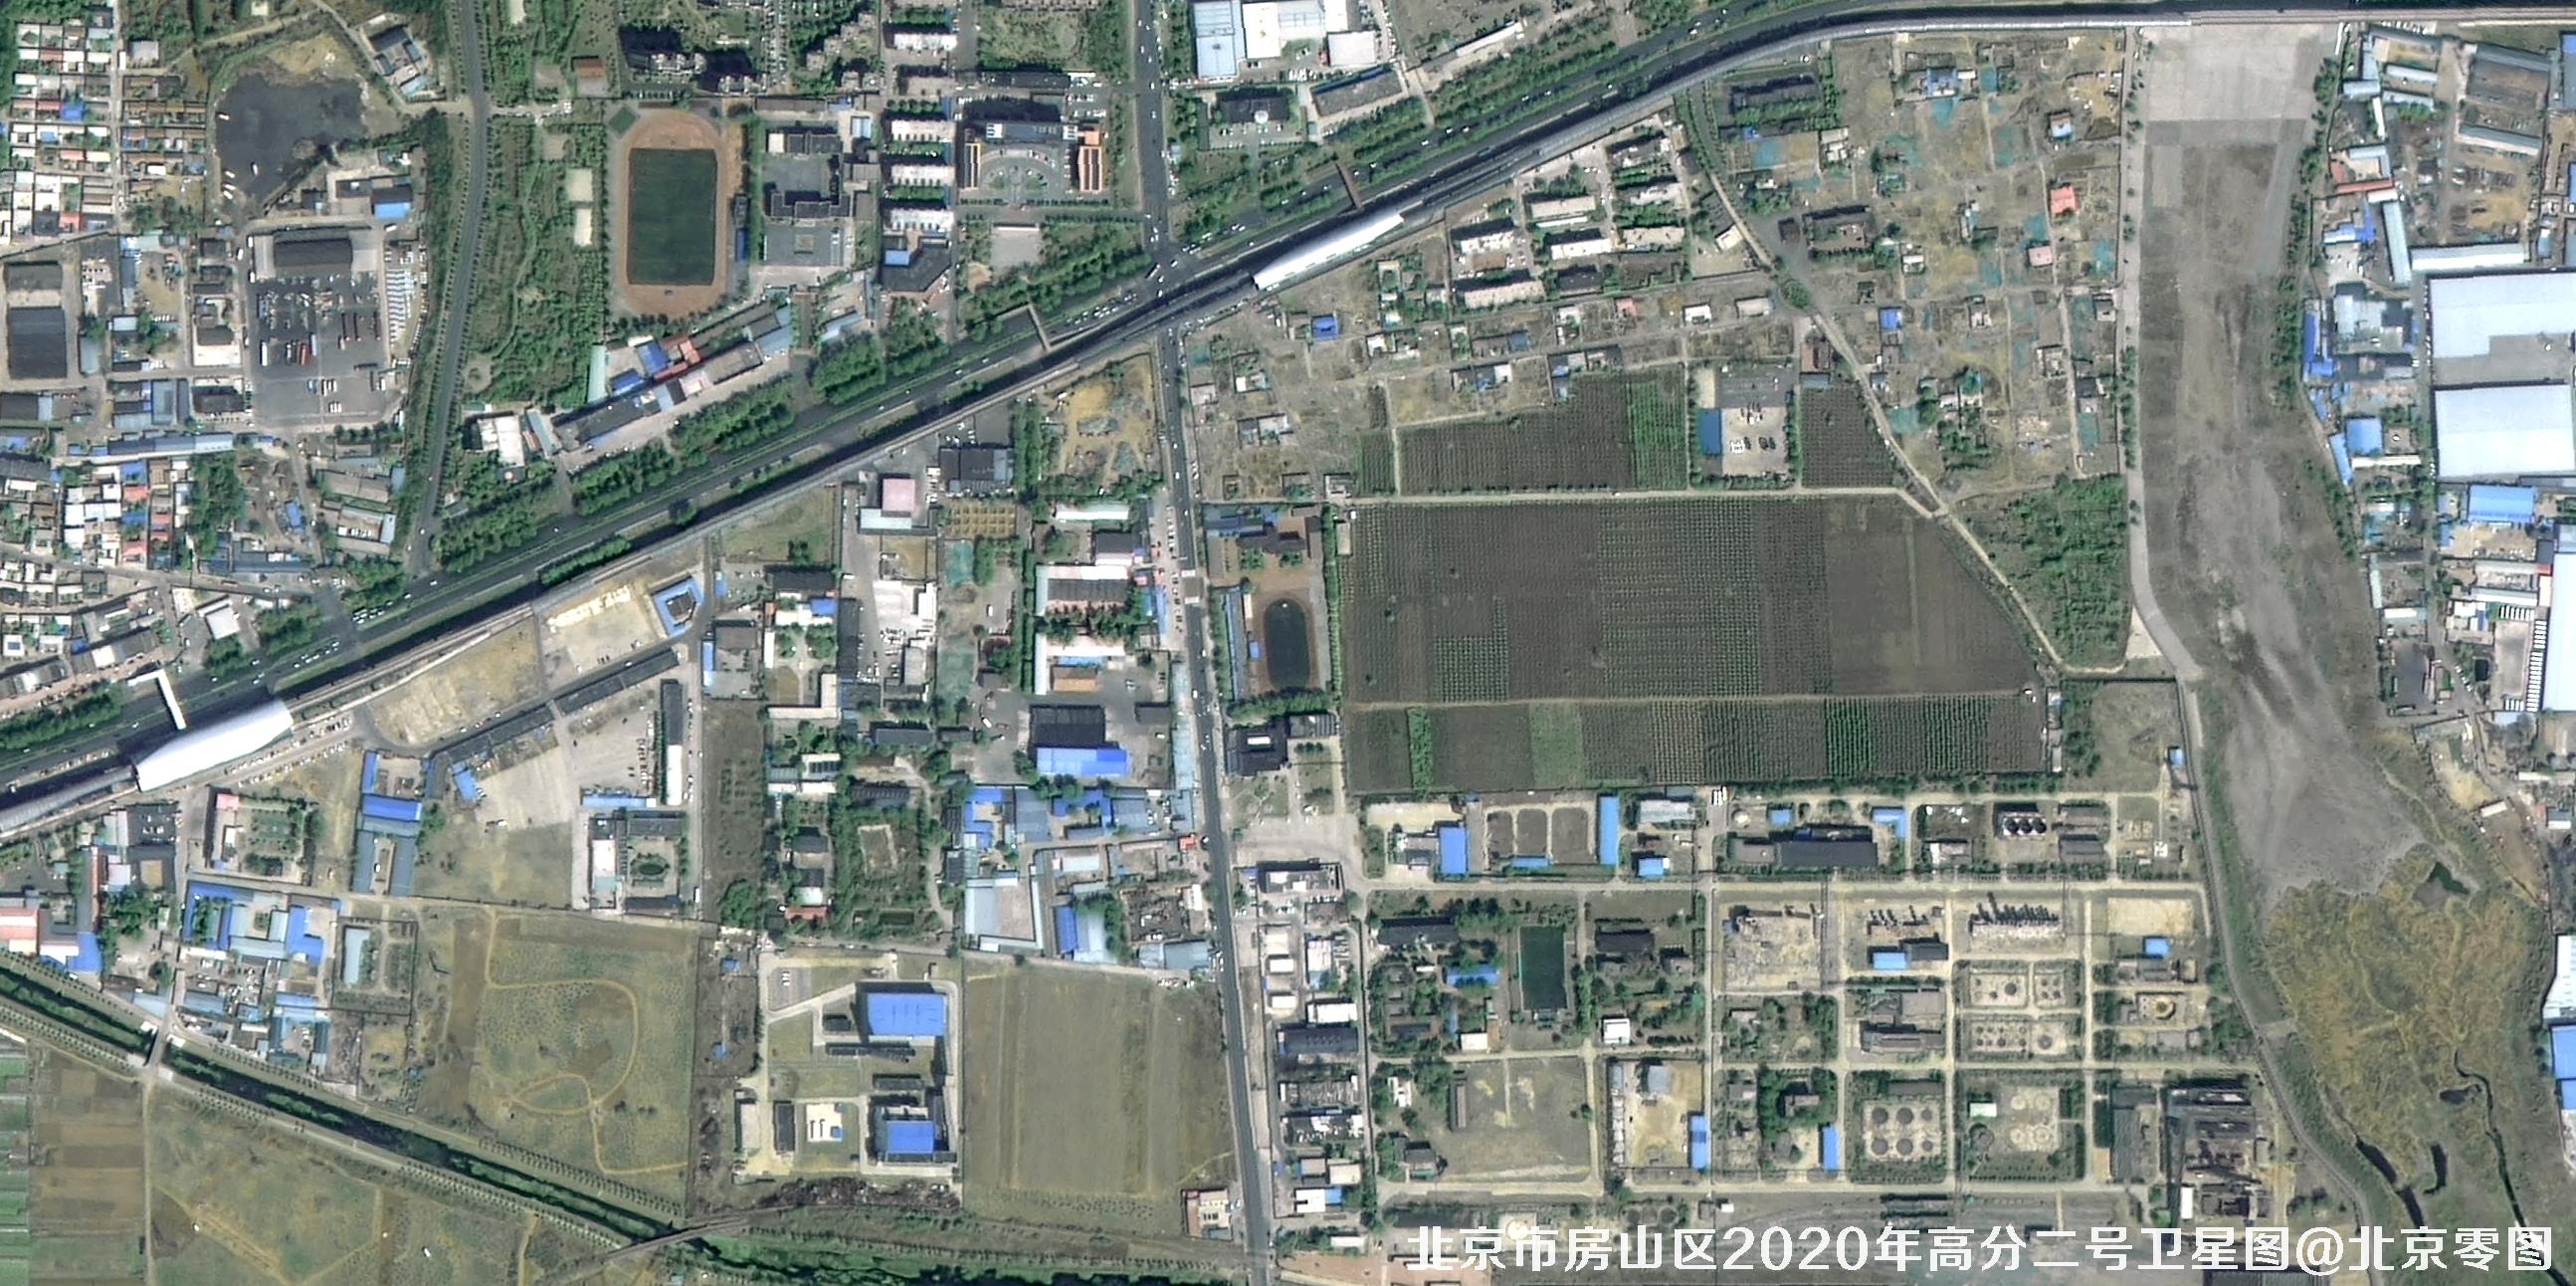 北京海淀区0.8米卫星图样例-高分二号卫星图